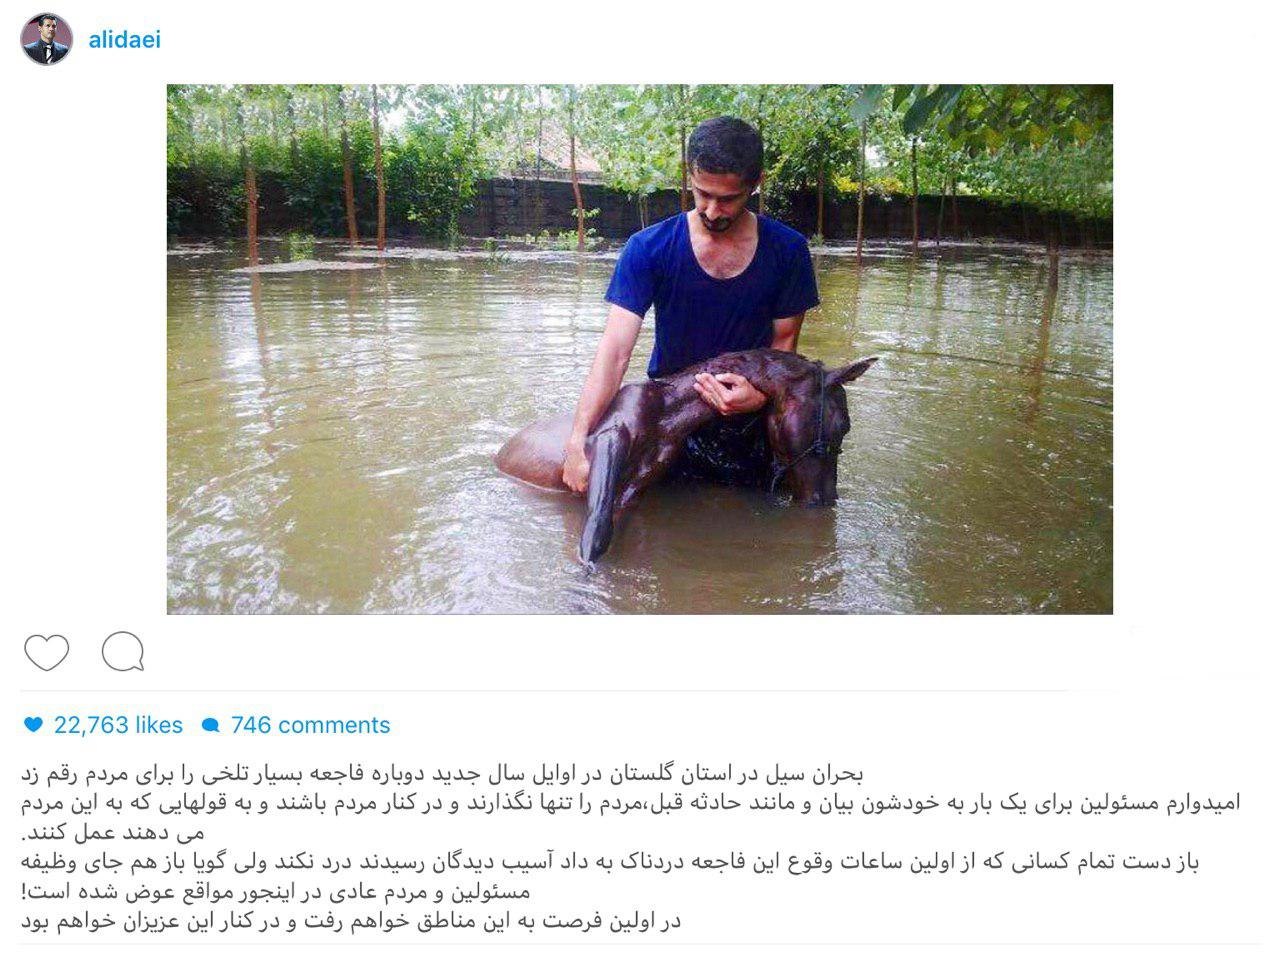 (تصویر) واکنش دایی به وقوع سیل در استان گلستان